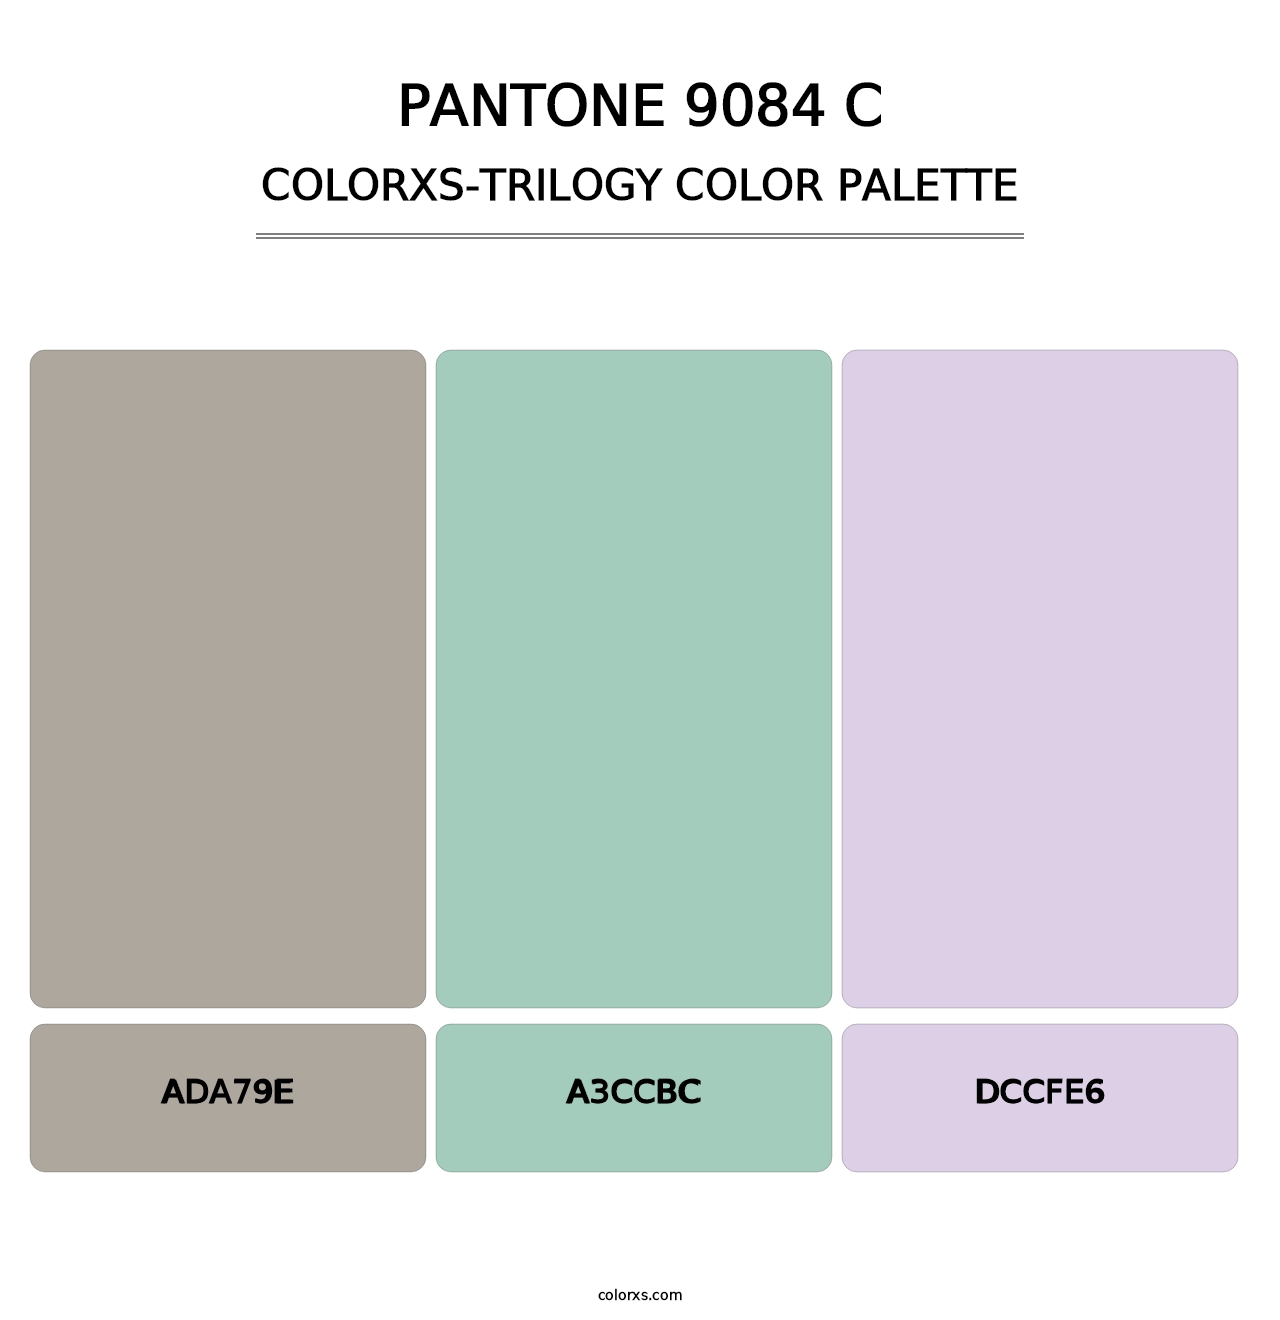 PANTONE 9084 C - Colorxs Trilogy Palette